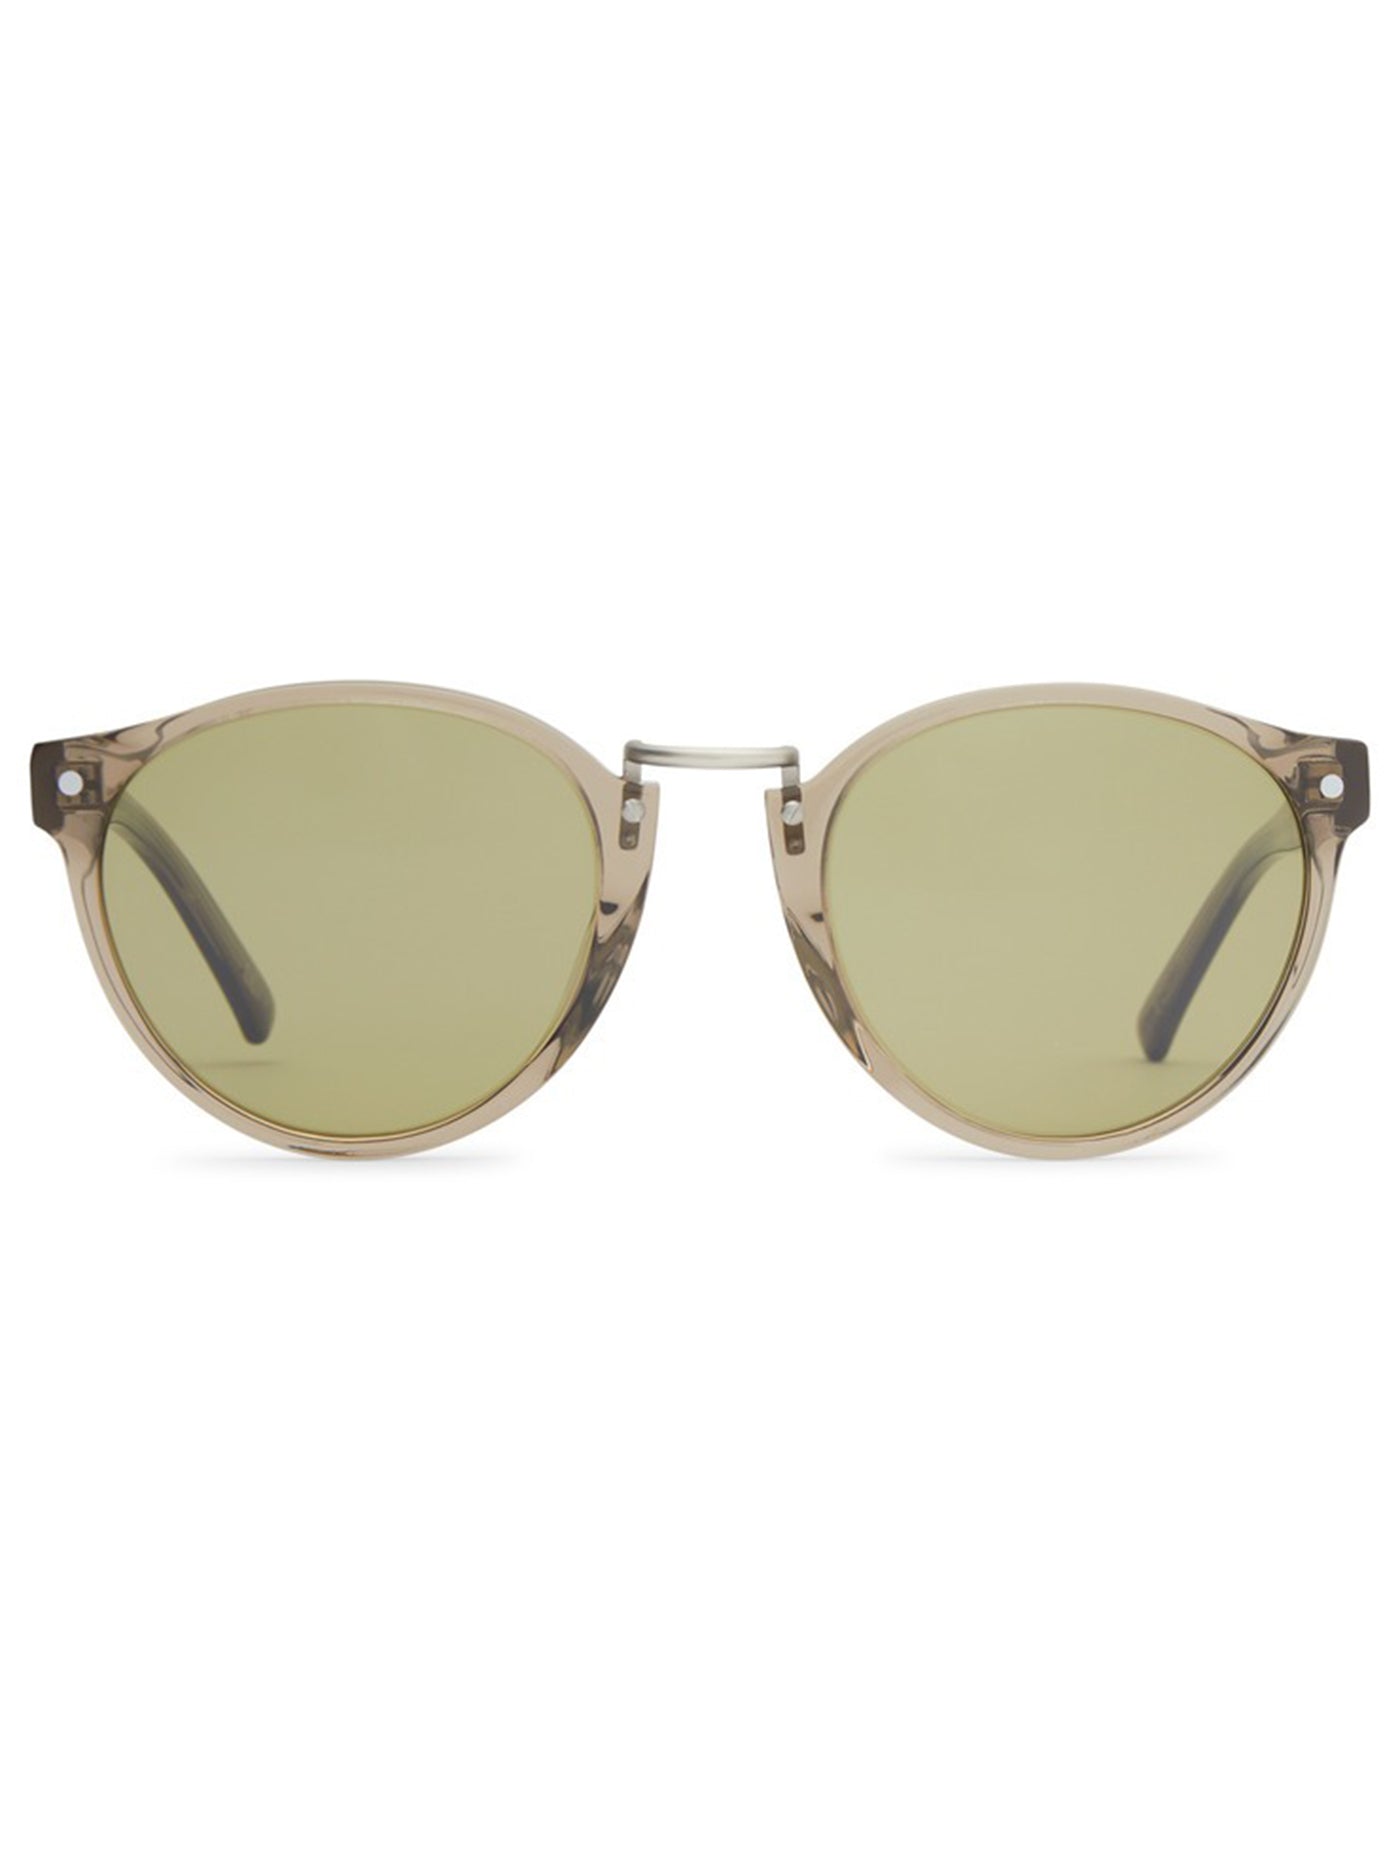 Von Zipper Stax Oyster/Olive Sunglasses